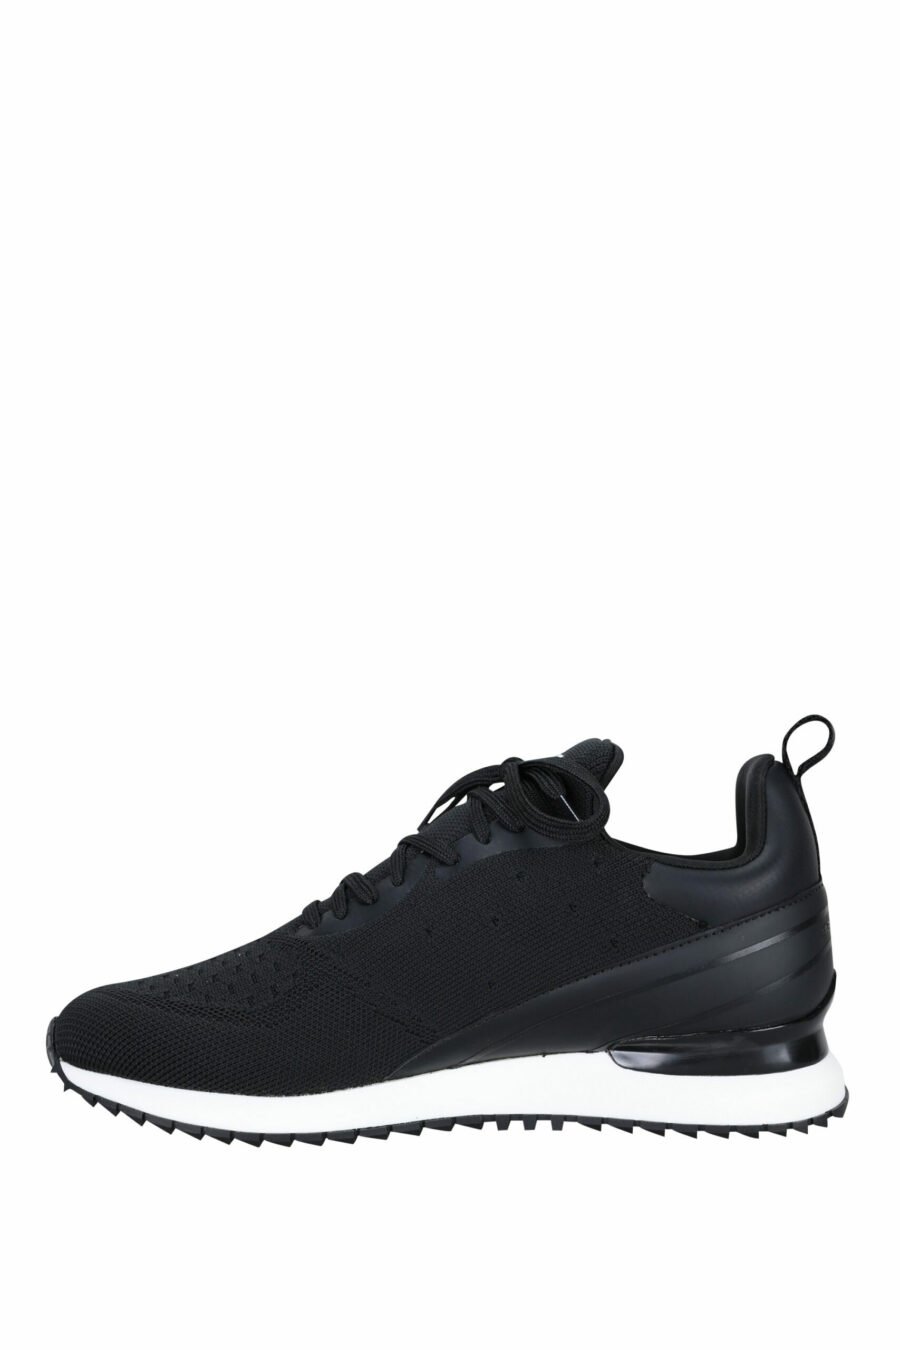 Chaussures "velocitor" noires avec logo "rue st guillaume" blanc - 5059529326370 2 échelles